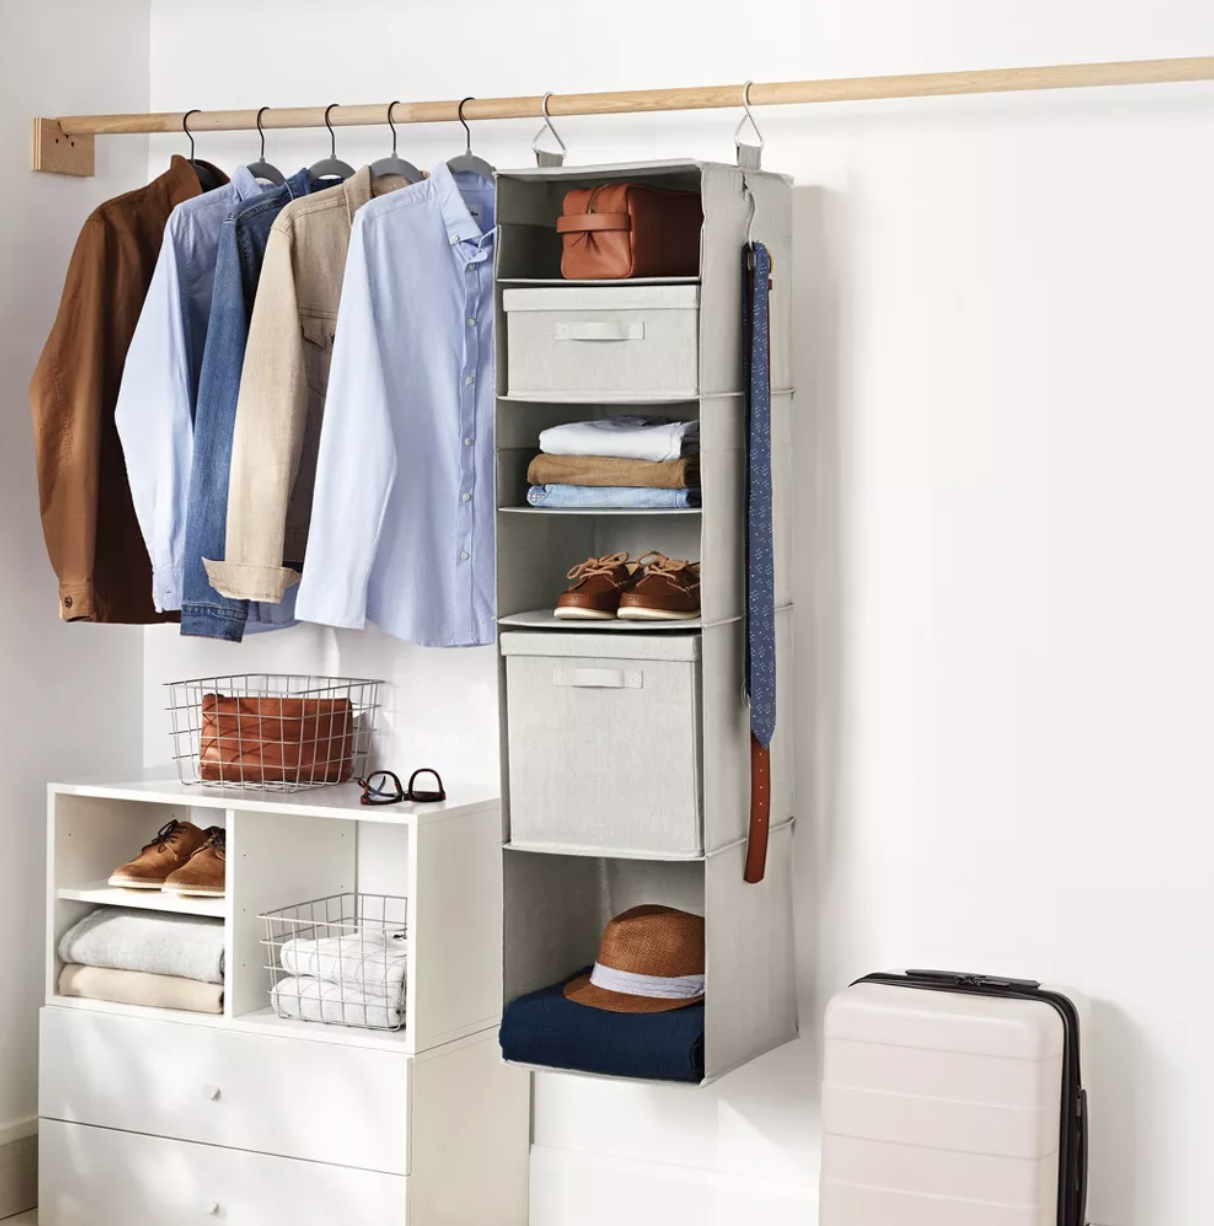 A hanging closet organizer